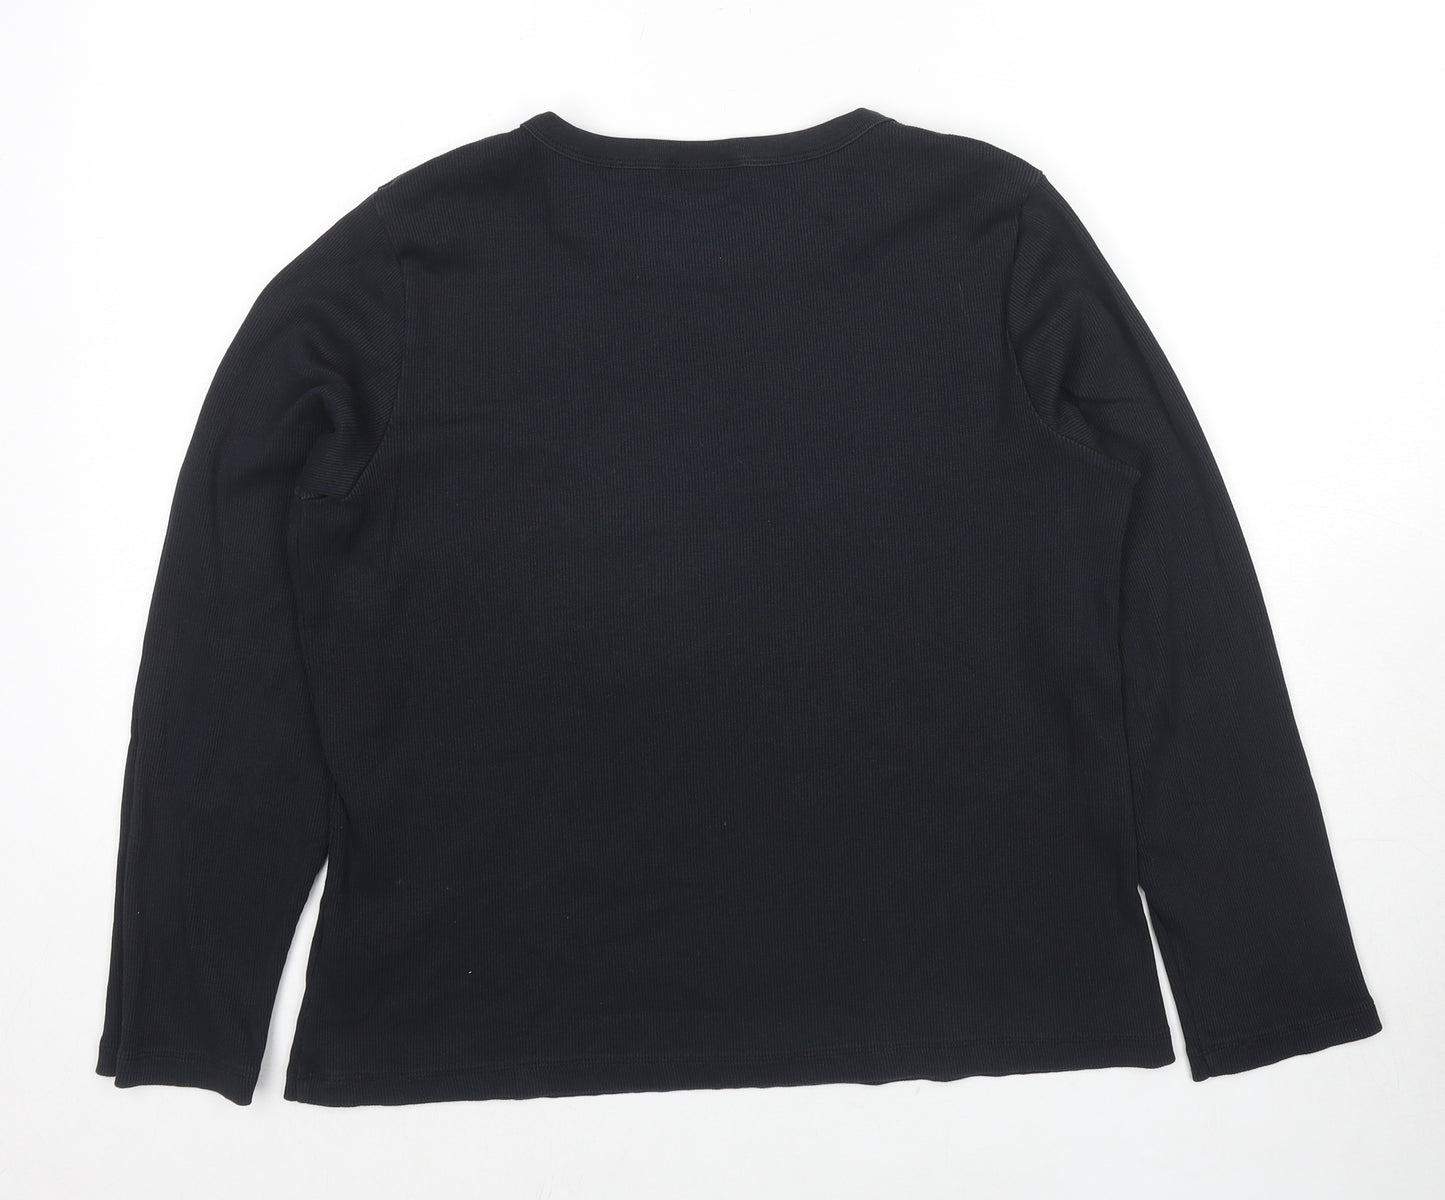 Lands' End Womens Black Cotton Basic T-Shirt Size 14 Crew Neck - Size 14-16